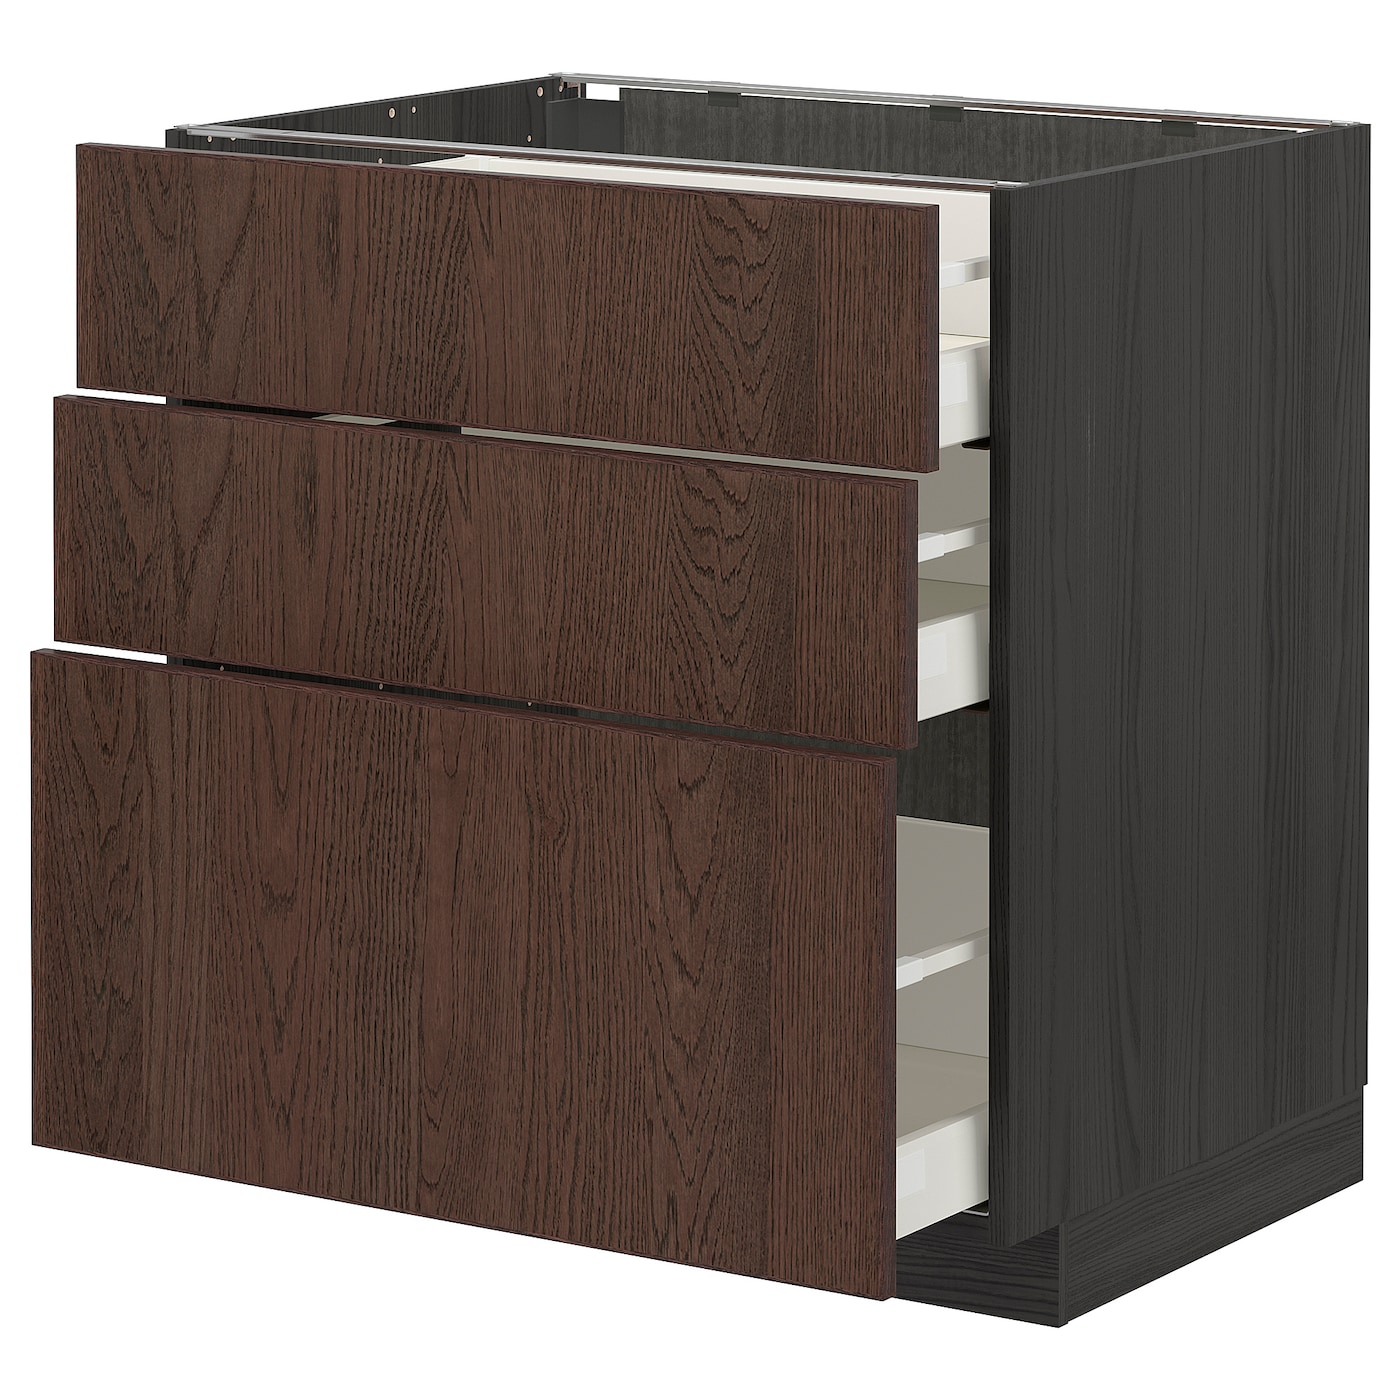 Напольный кухонный шкаф  - IKEA METOD MAXIMERA, 88x62x80см, черный/коричневый, МЕТОД МАКСИМЕРА ИКЕА